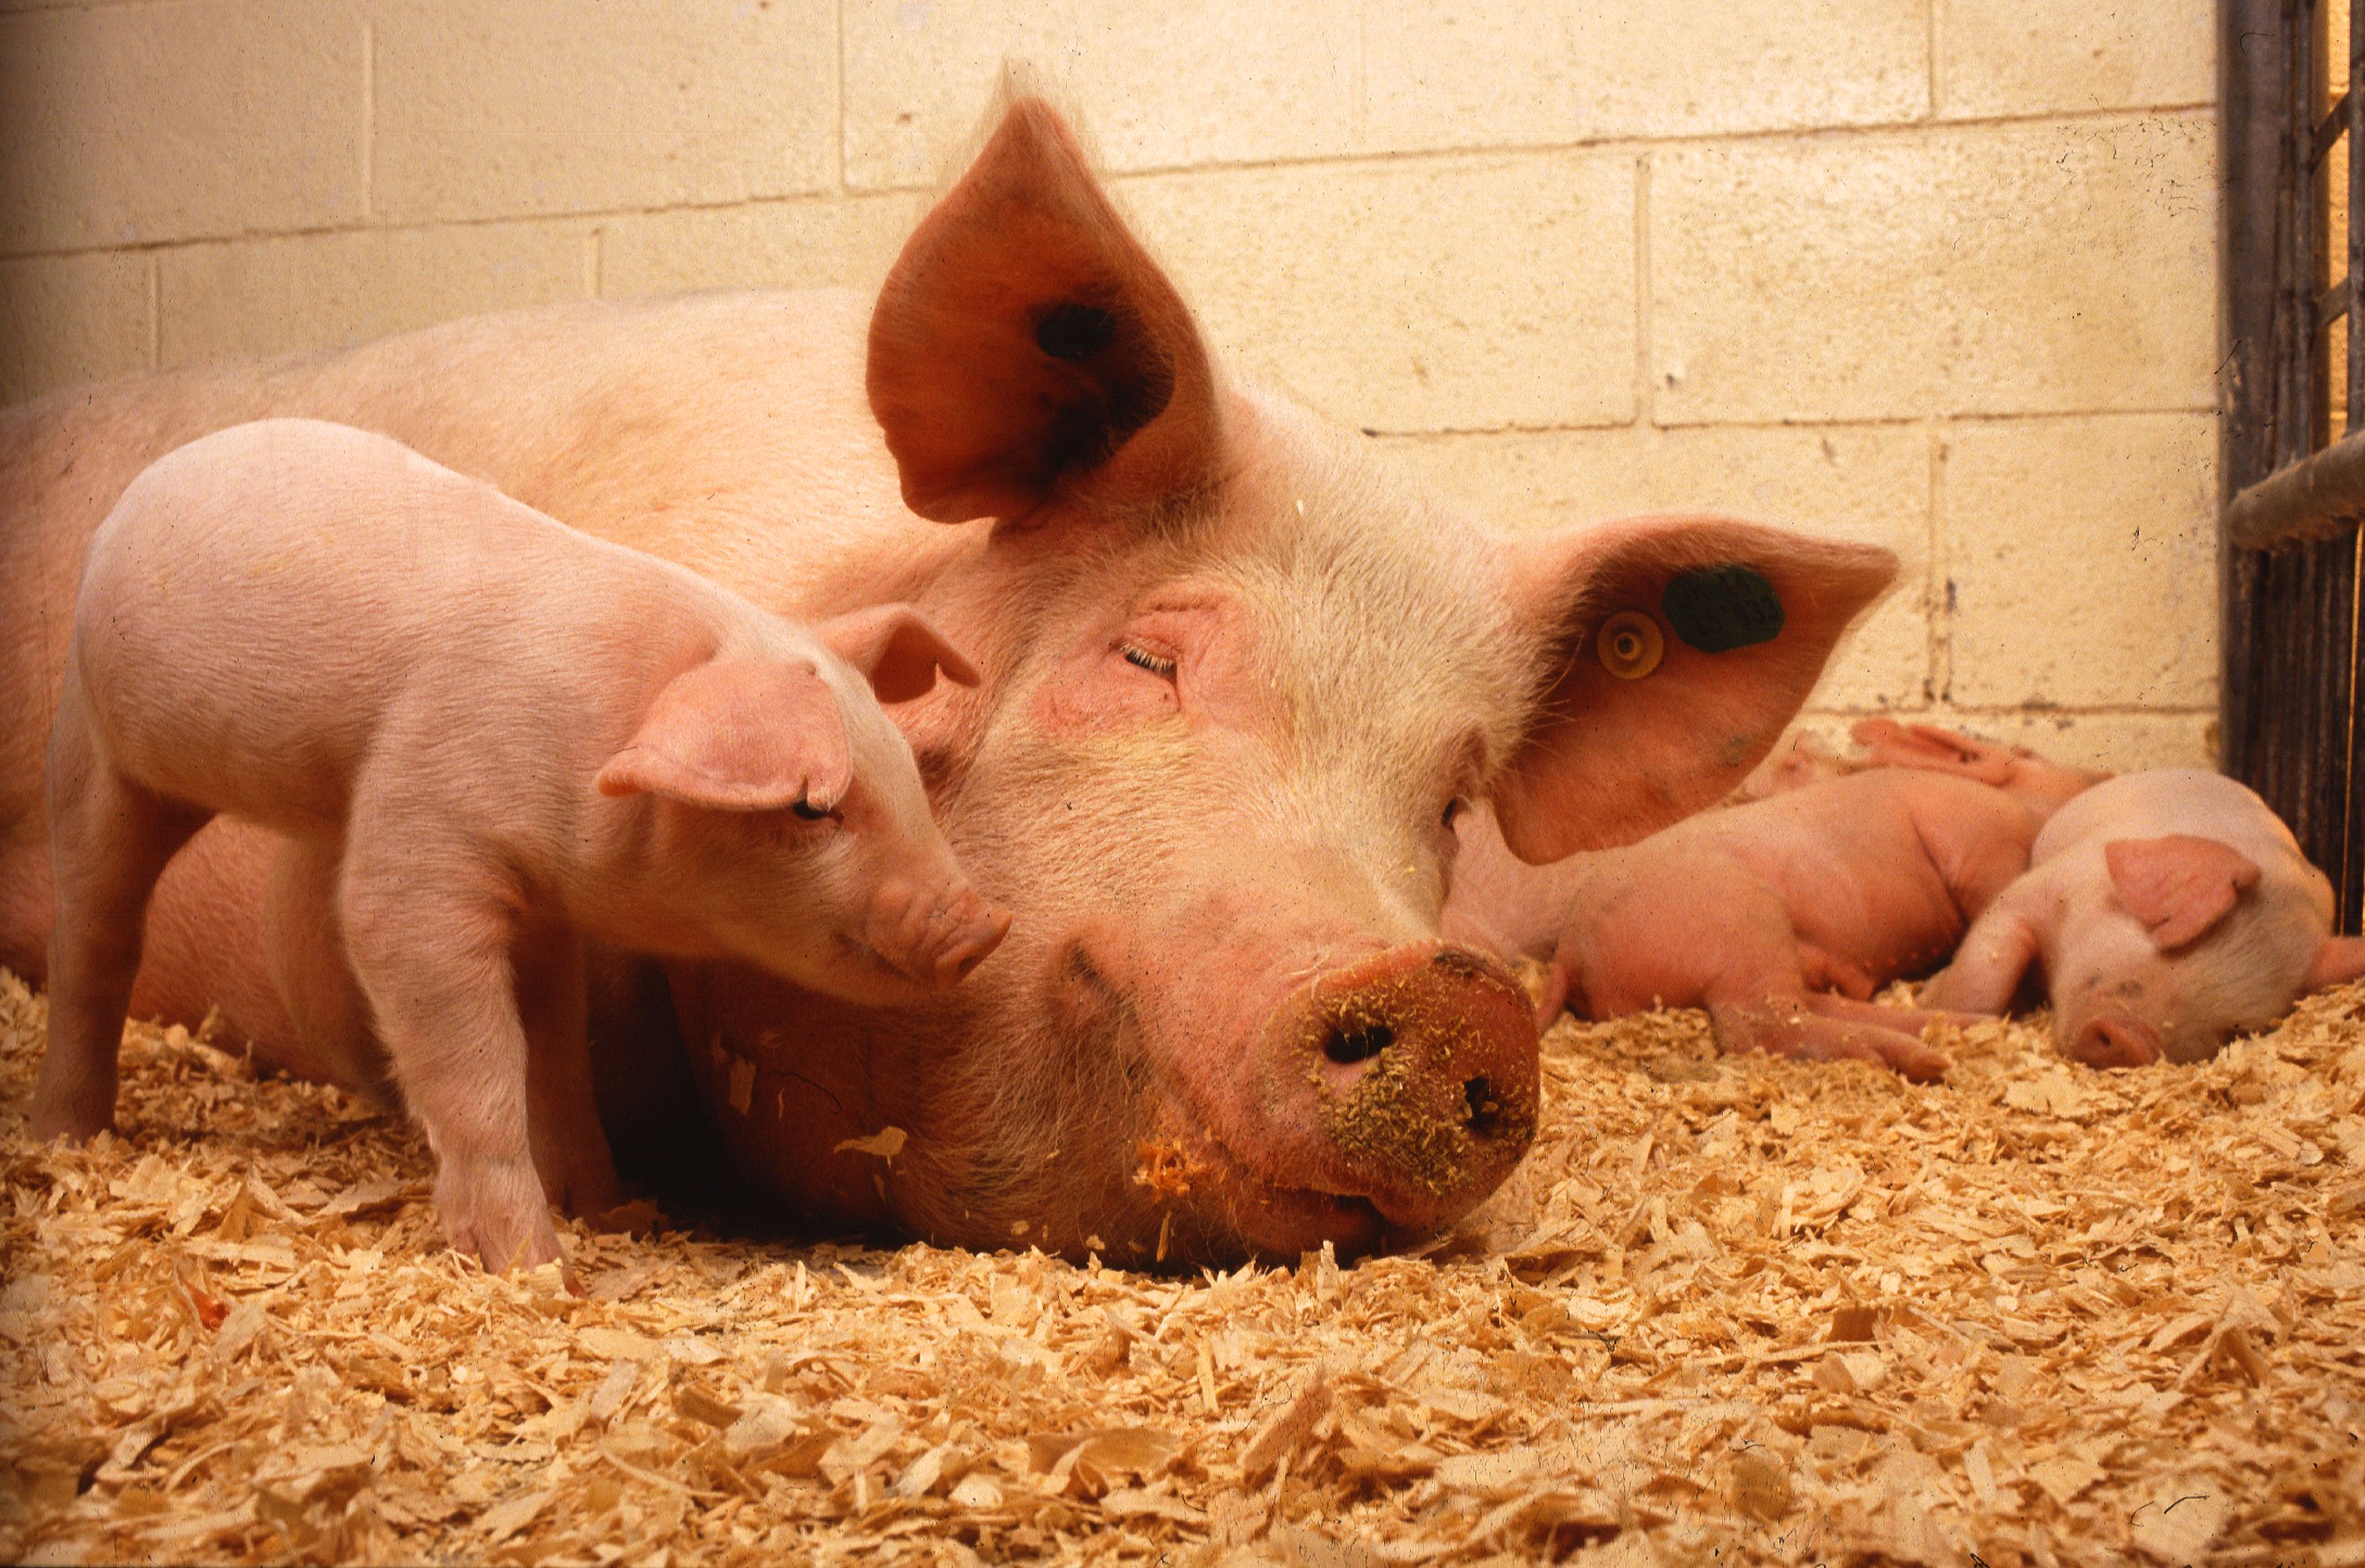 Cultivar los órganos humanos a los cerdos. Lo que puede salir mal?